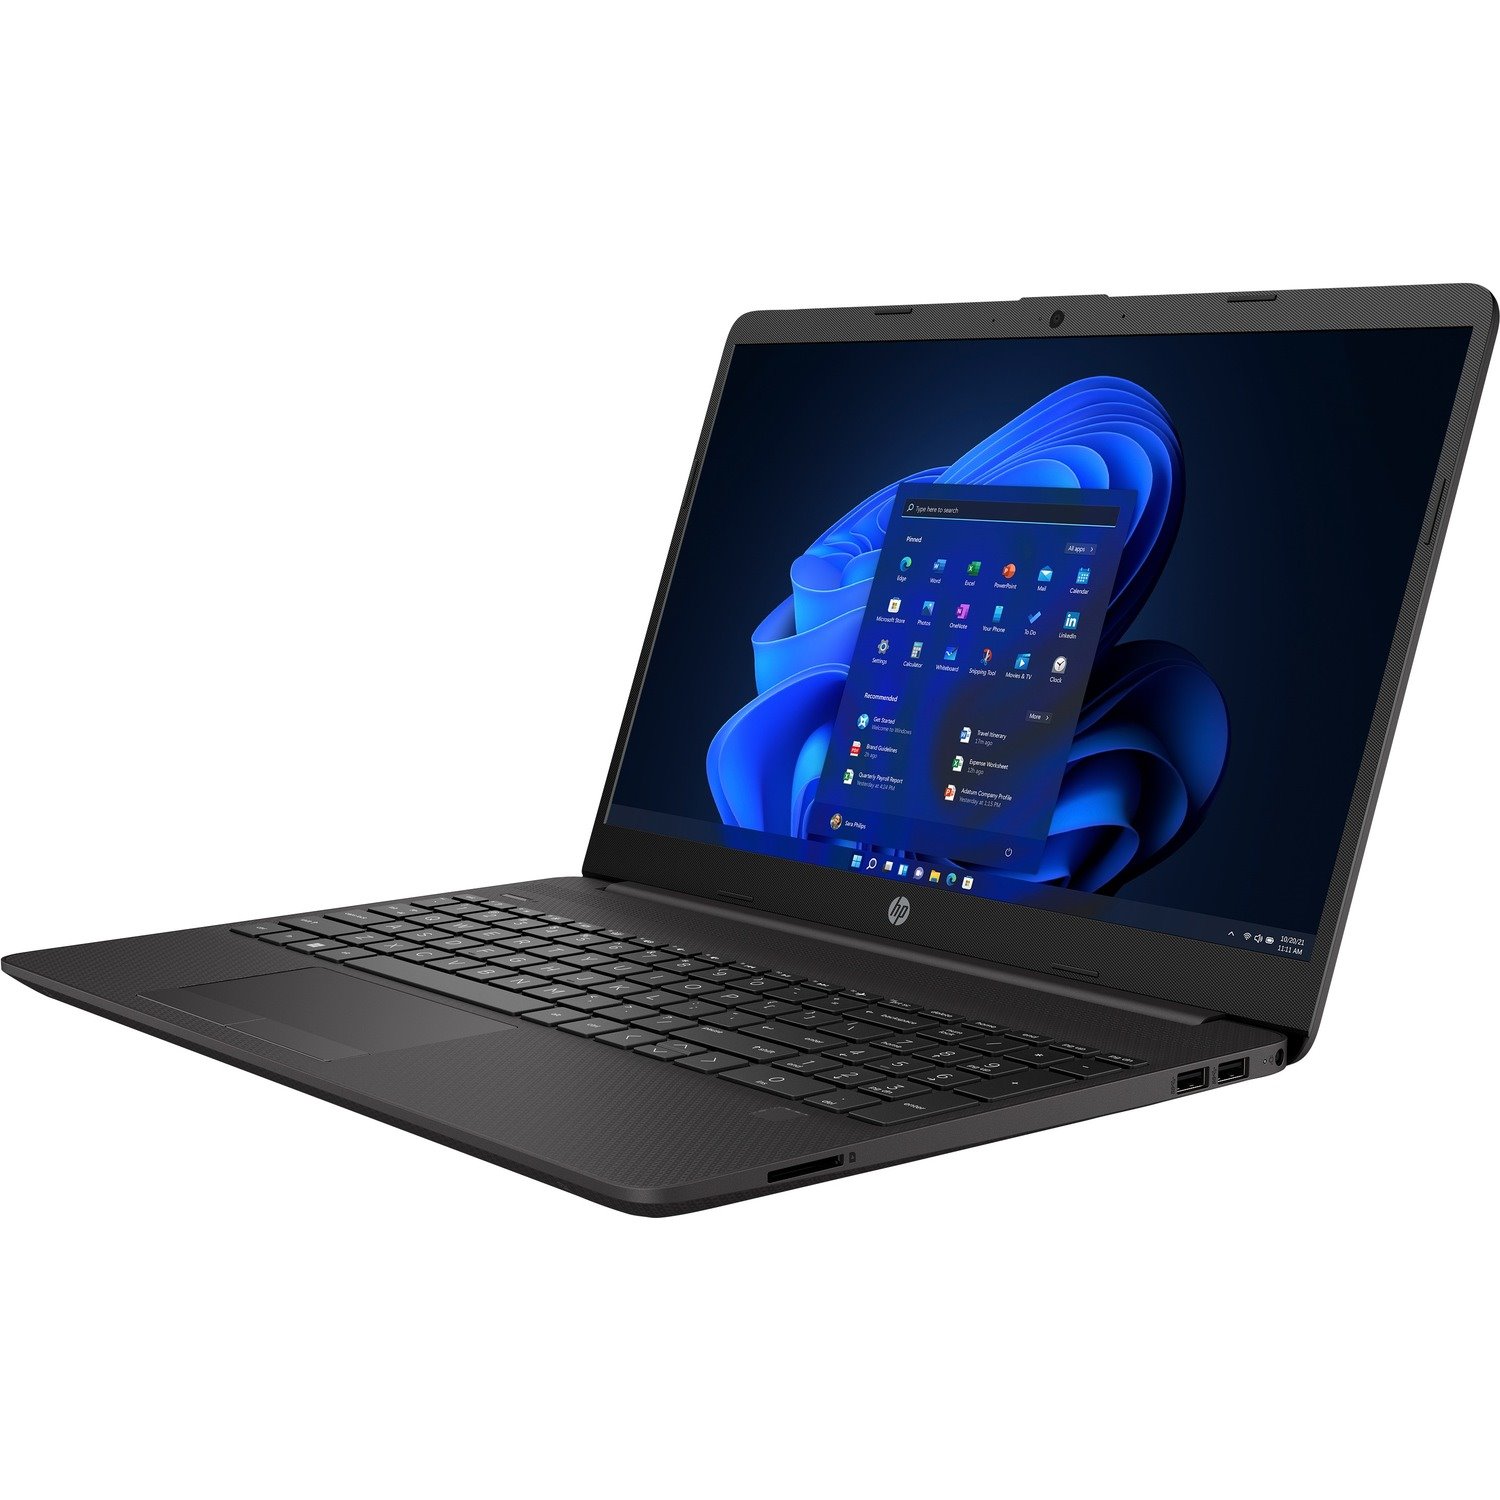 HP 255 G8 15.6" Notebook - Full HD - AMD Ryzen 5 5500U - 16 GB - 256 GB SSD - English, French Keyboard - Dark Ash Silver